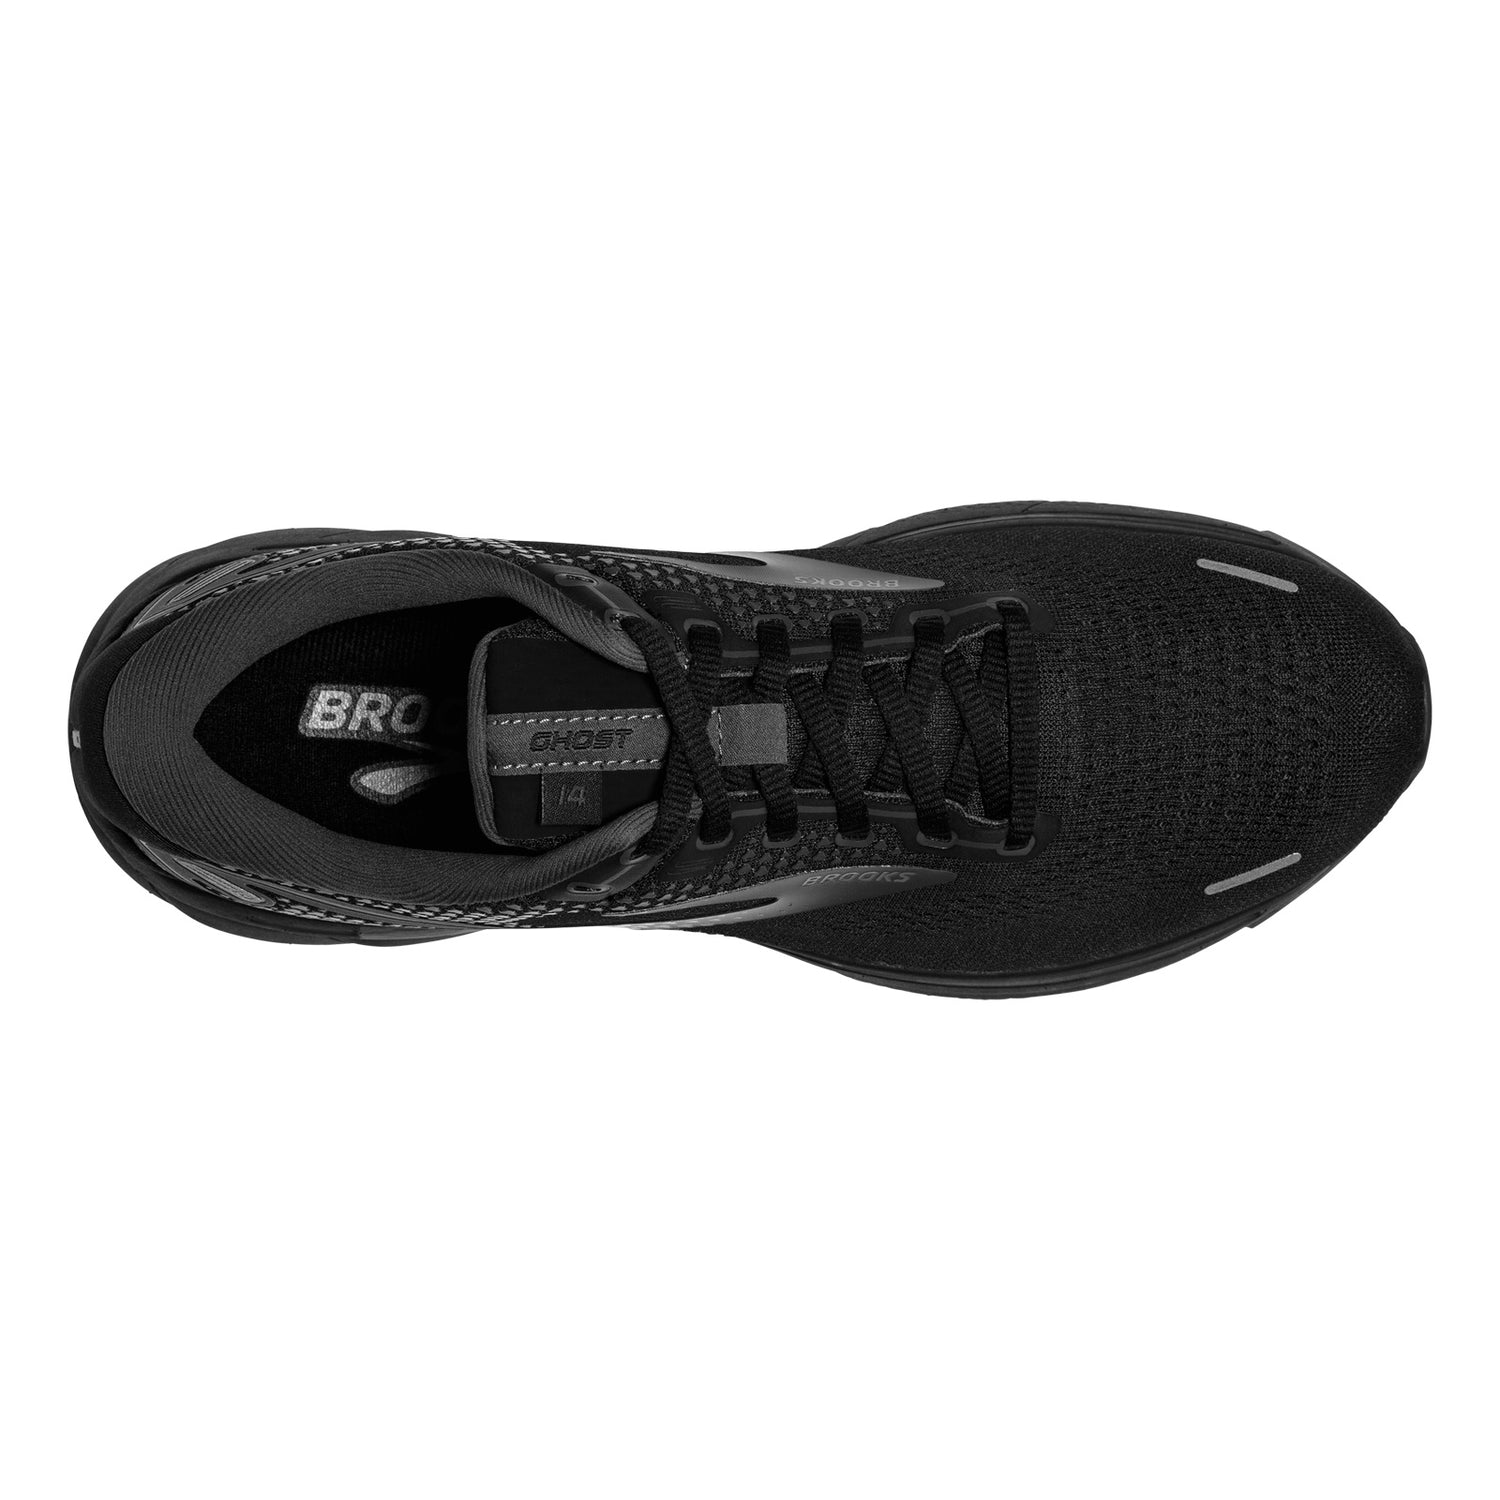 Peltz Shoes  Men's Brooks Ghost 14 Running Shoe - Wide Width Black/Ebony 110369 2E 020